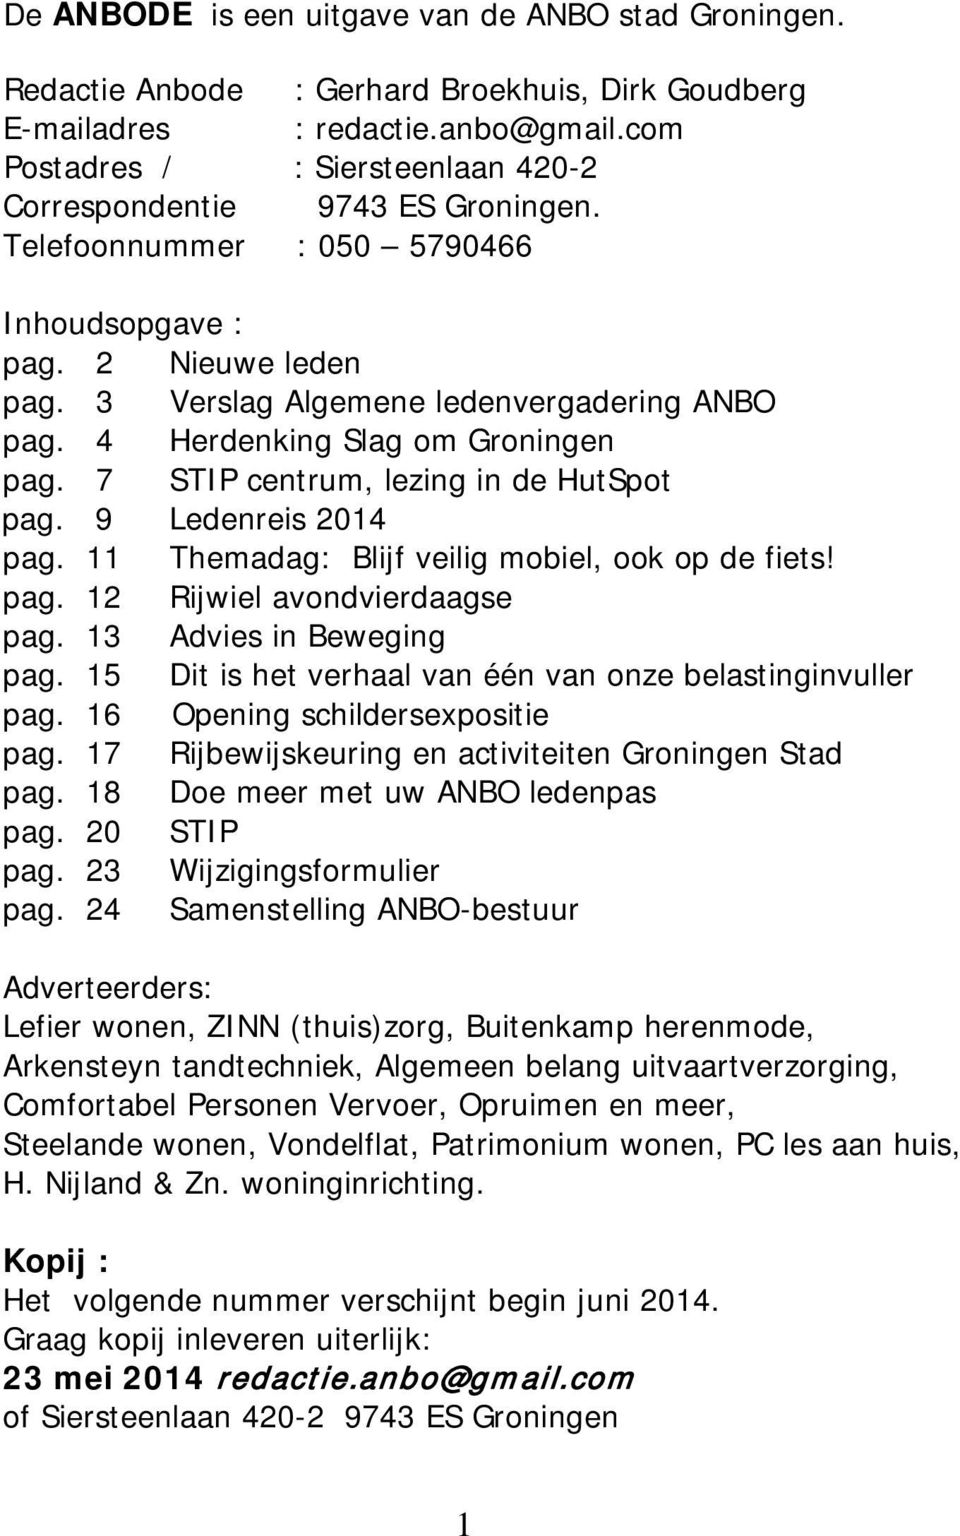 4 Herdenking Slag om Groningen pag. 7 STIP centrum, lezing in de HutSpot pag. 9 Ledenreis 2014 pag. 11 Themadag: Blijf veilig mobiel, ook op de fiets! pag. 12 Rijwiel avondvierdaagse pag.